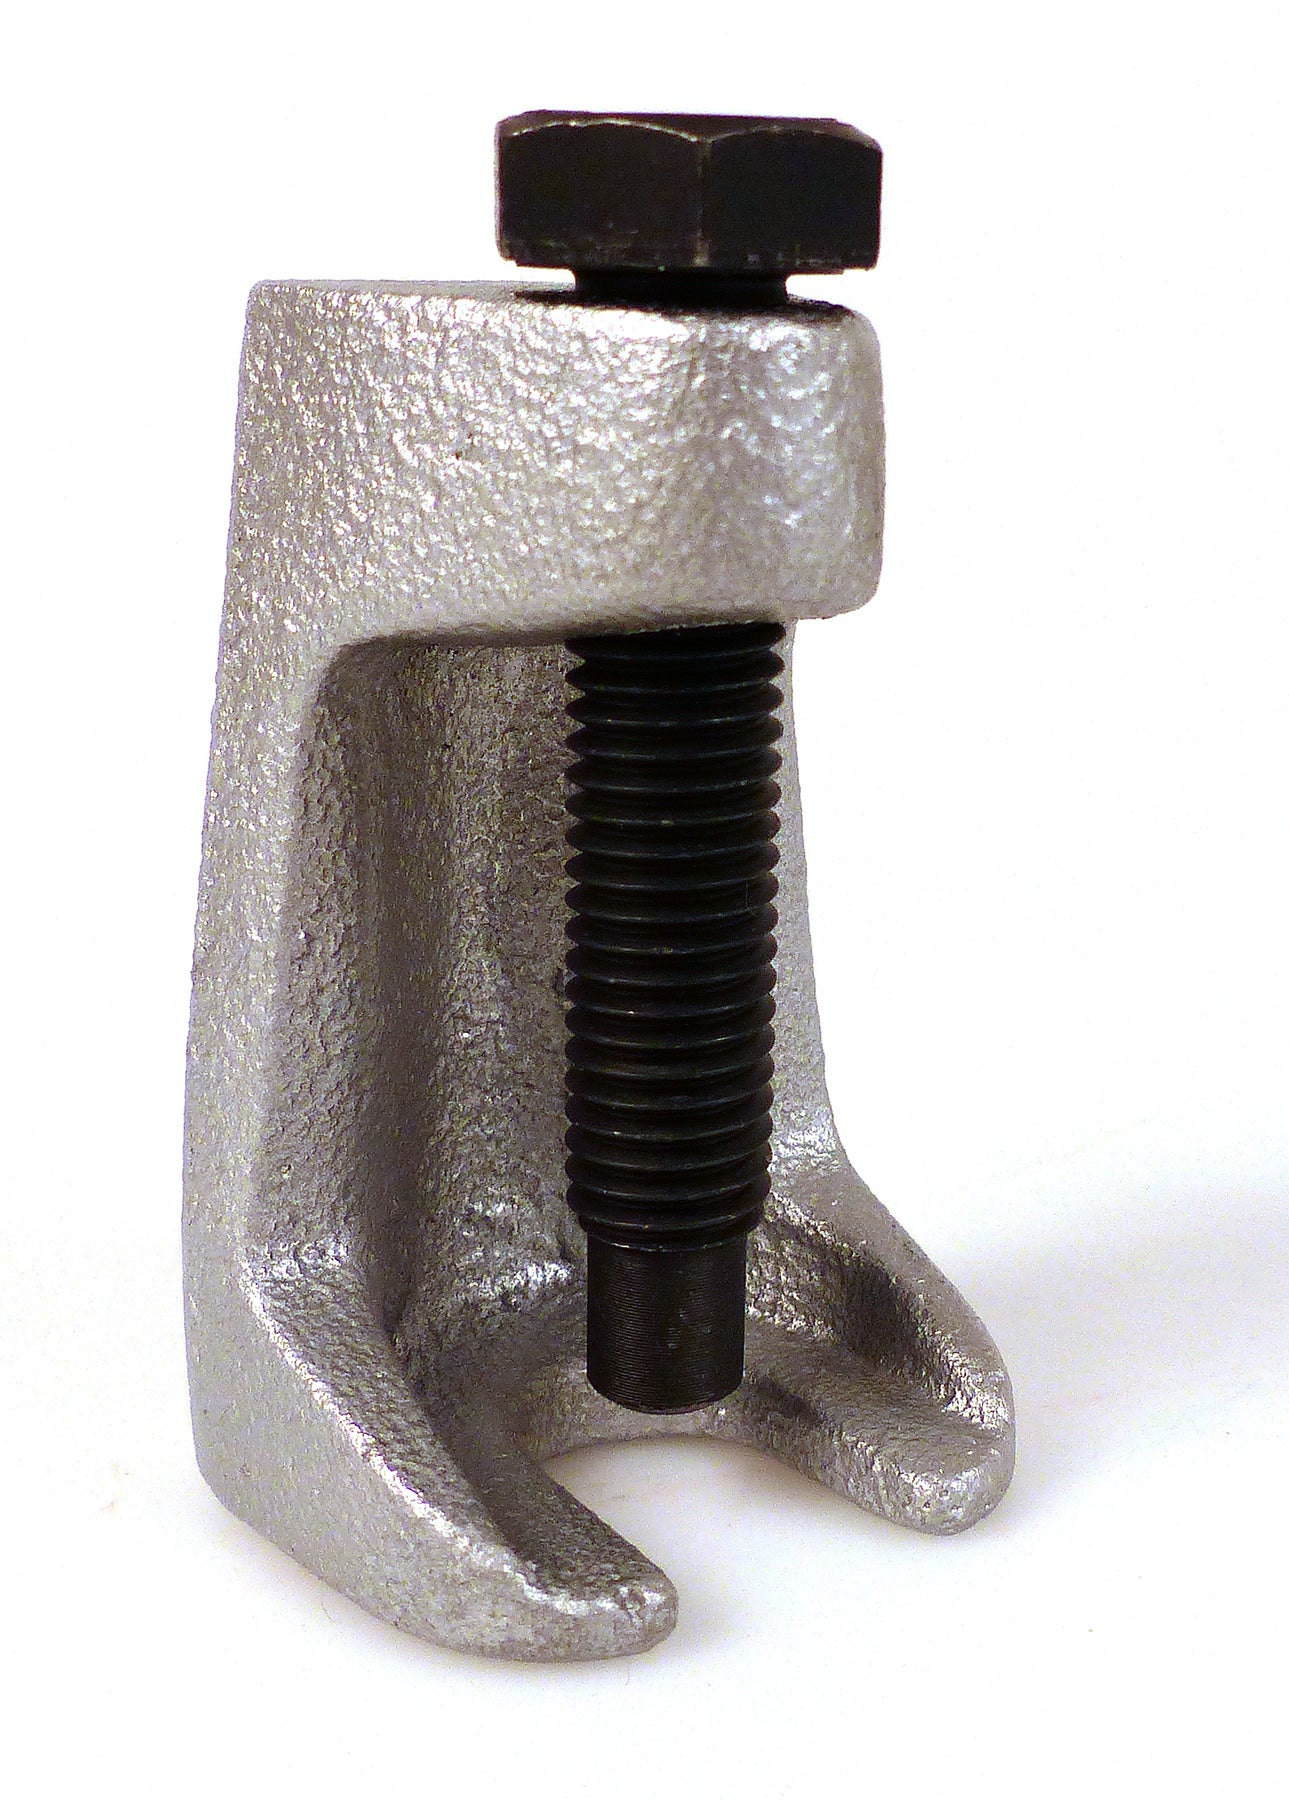 Arrache rotule - Extracteur droit à Vis 19 mm